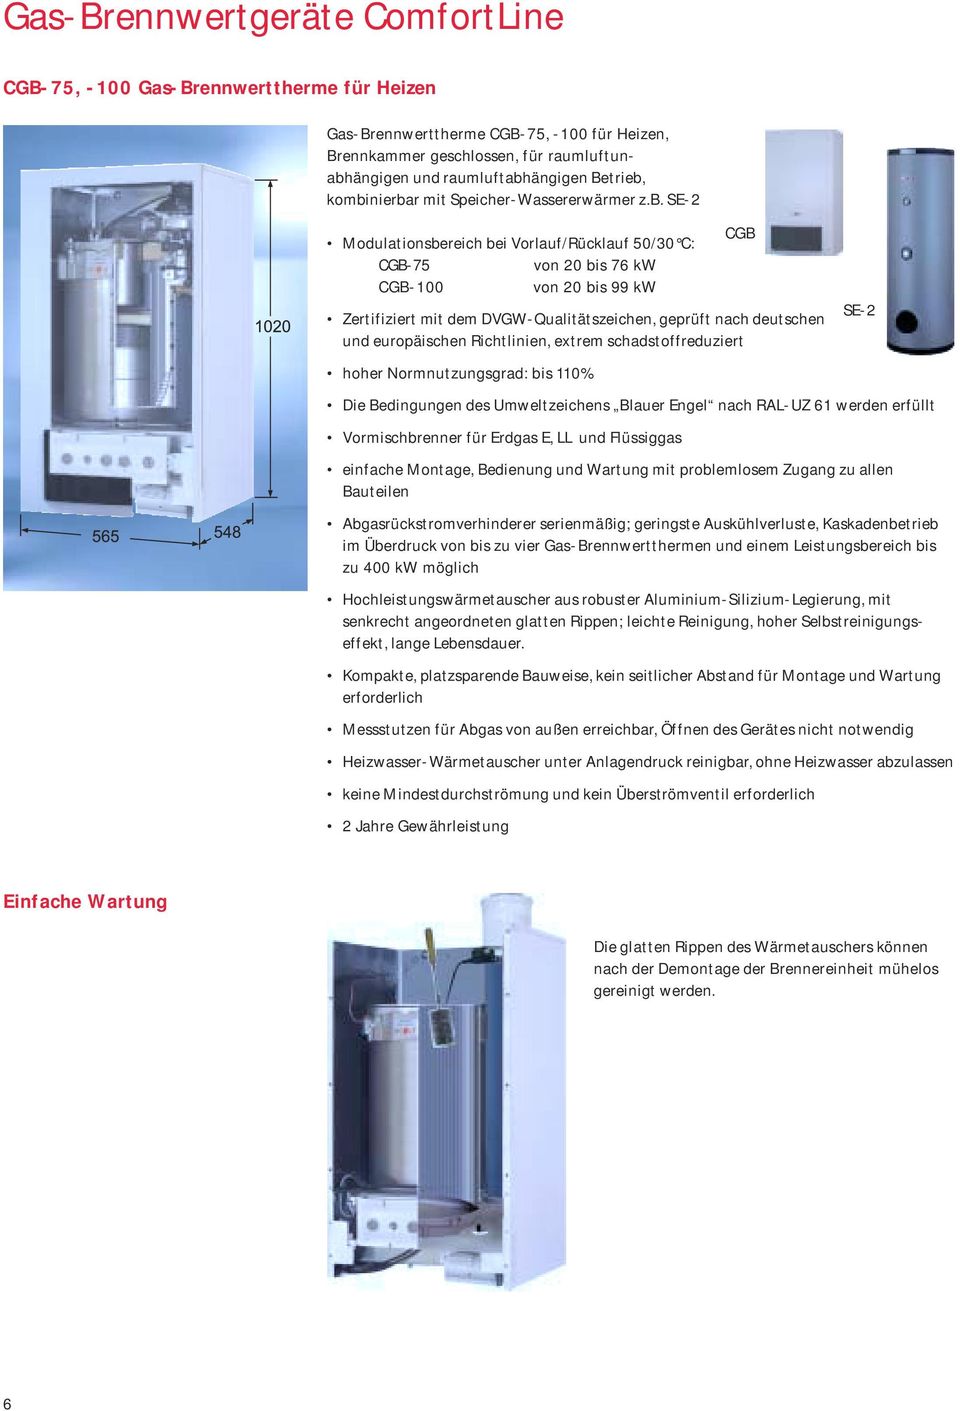 kombinierbar mit Speicher-Wassererwärmer z.b. SE-2 CGB Modulationsbereich bei Vorlauf/Rücklauf 50/30 C: CGB-75 von 20 bis 76 kw CGB-100 von 20 bis 99 kw Zertifiziert mit dem DVGW-Qualitätszeichen,